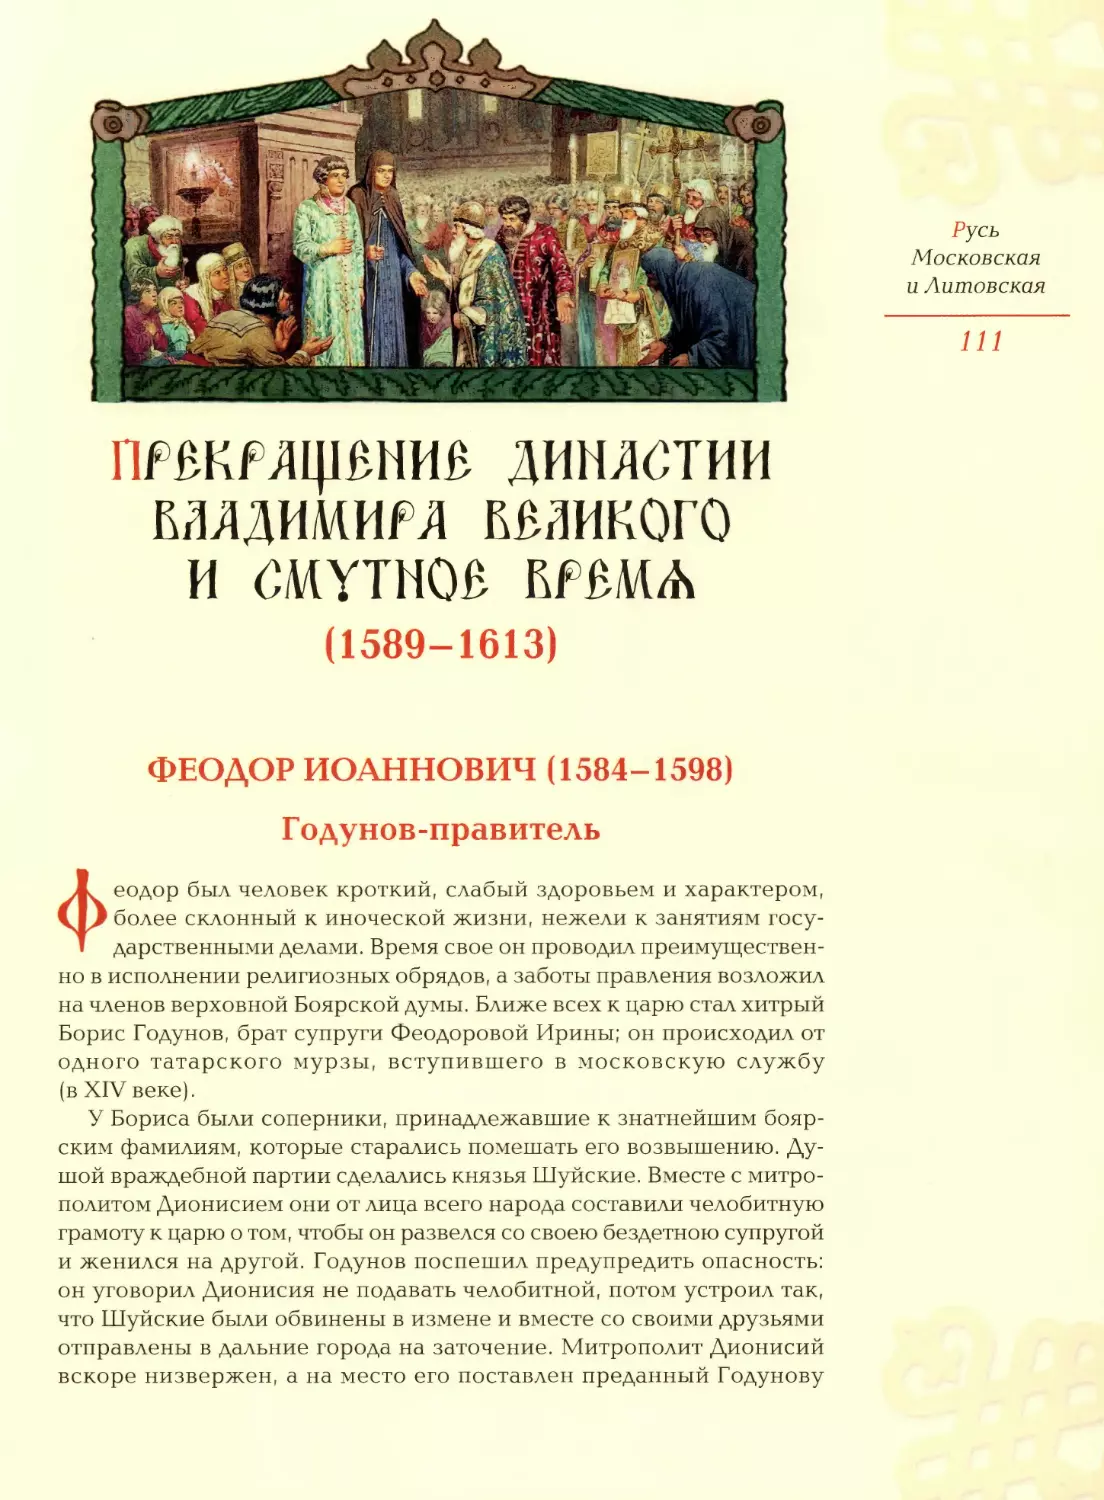 Прекращение династии Владимира Великого и смутное время (1589-1613